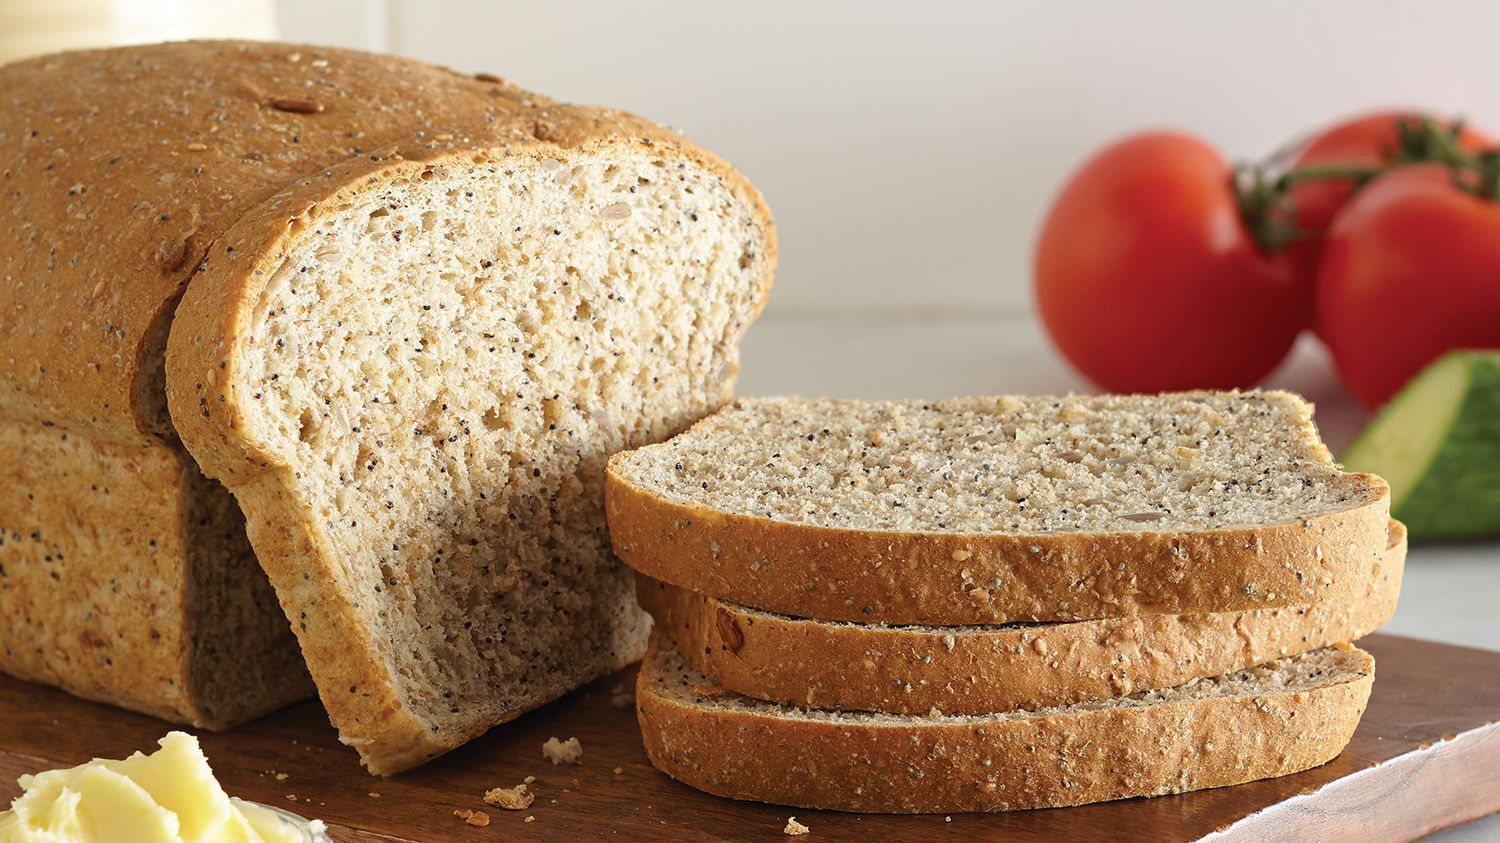 Sara Lee Classic 100% Whole Wheat Bread - Foodland